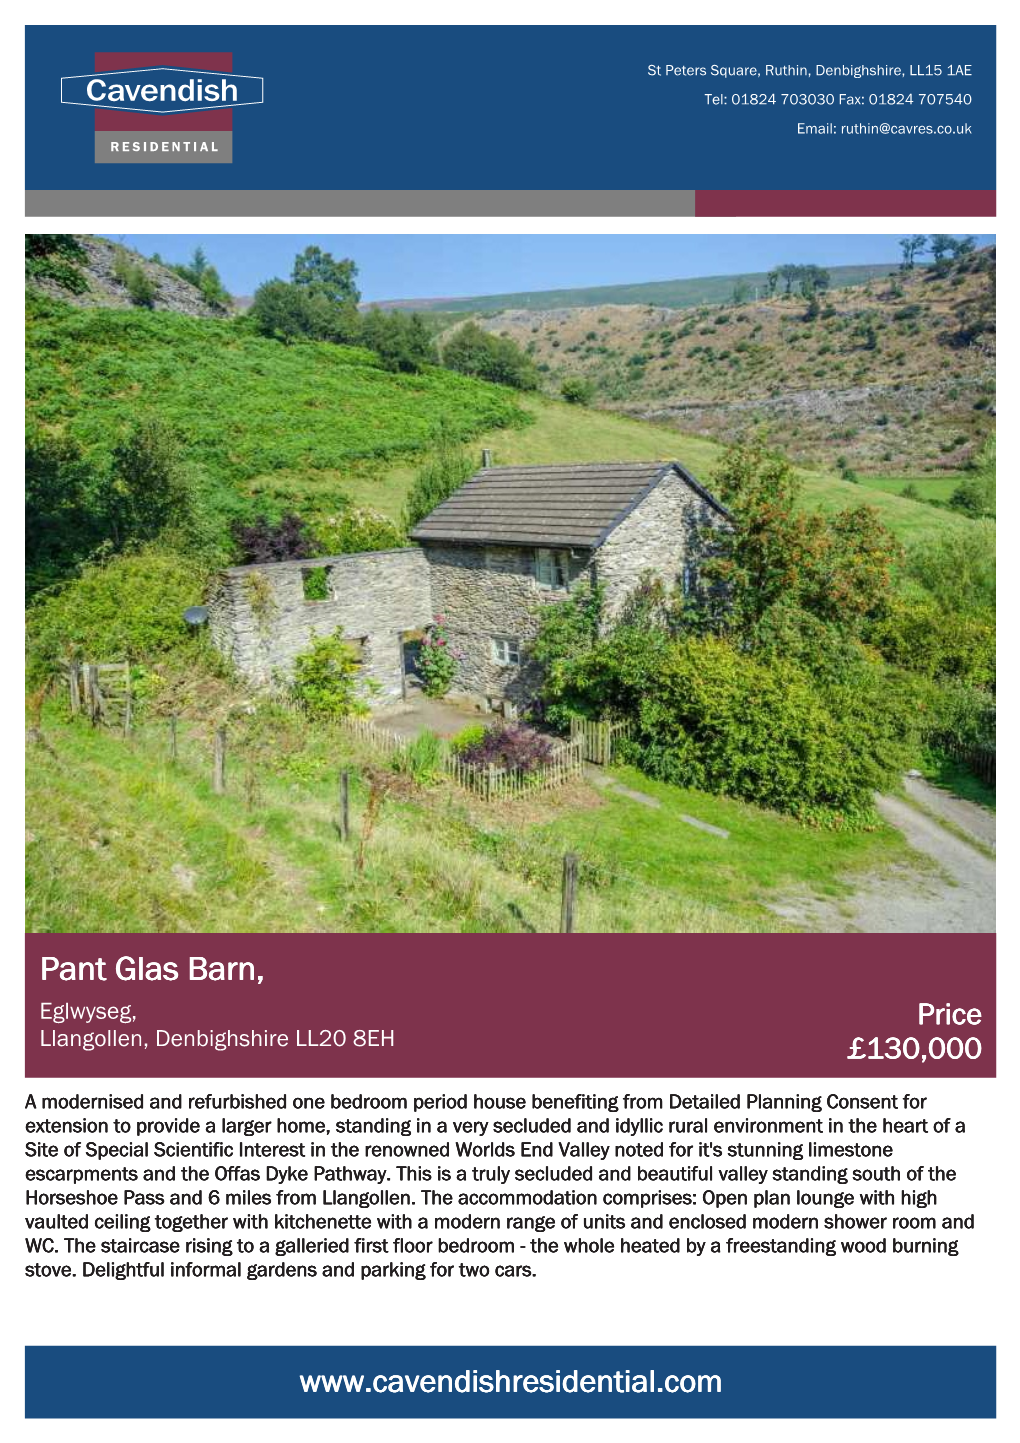 Pant Glas Barn, Eglwyseg, Price Llangollen, Denbighshire LL20 8EH £130,000